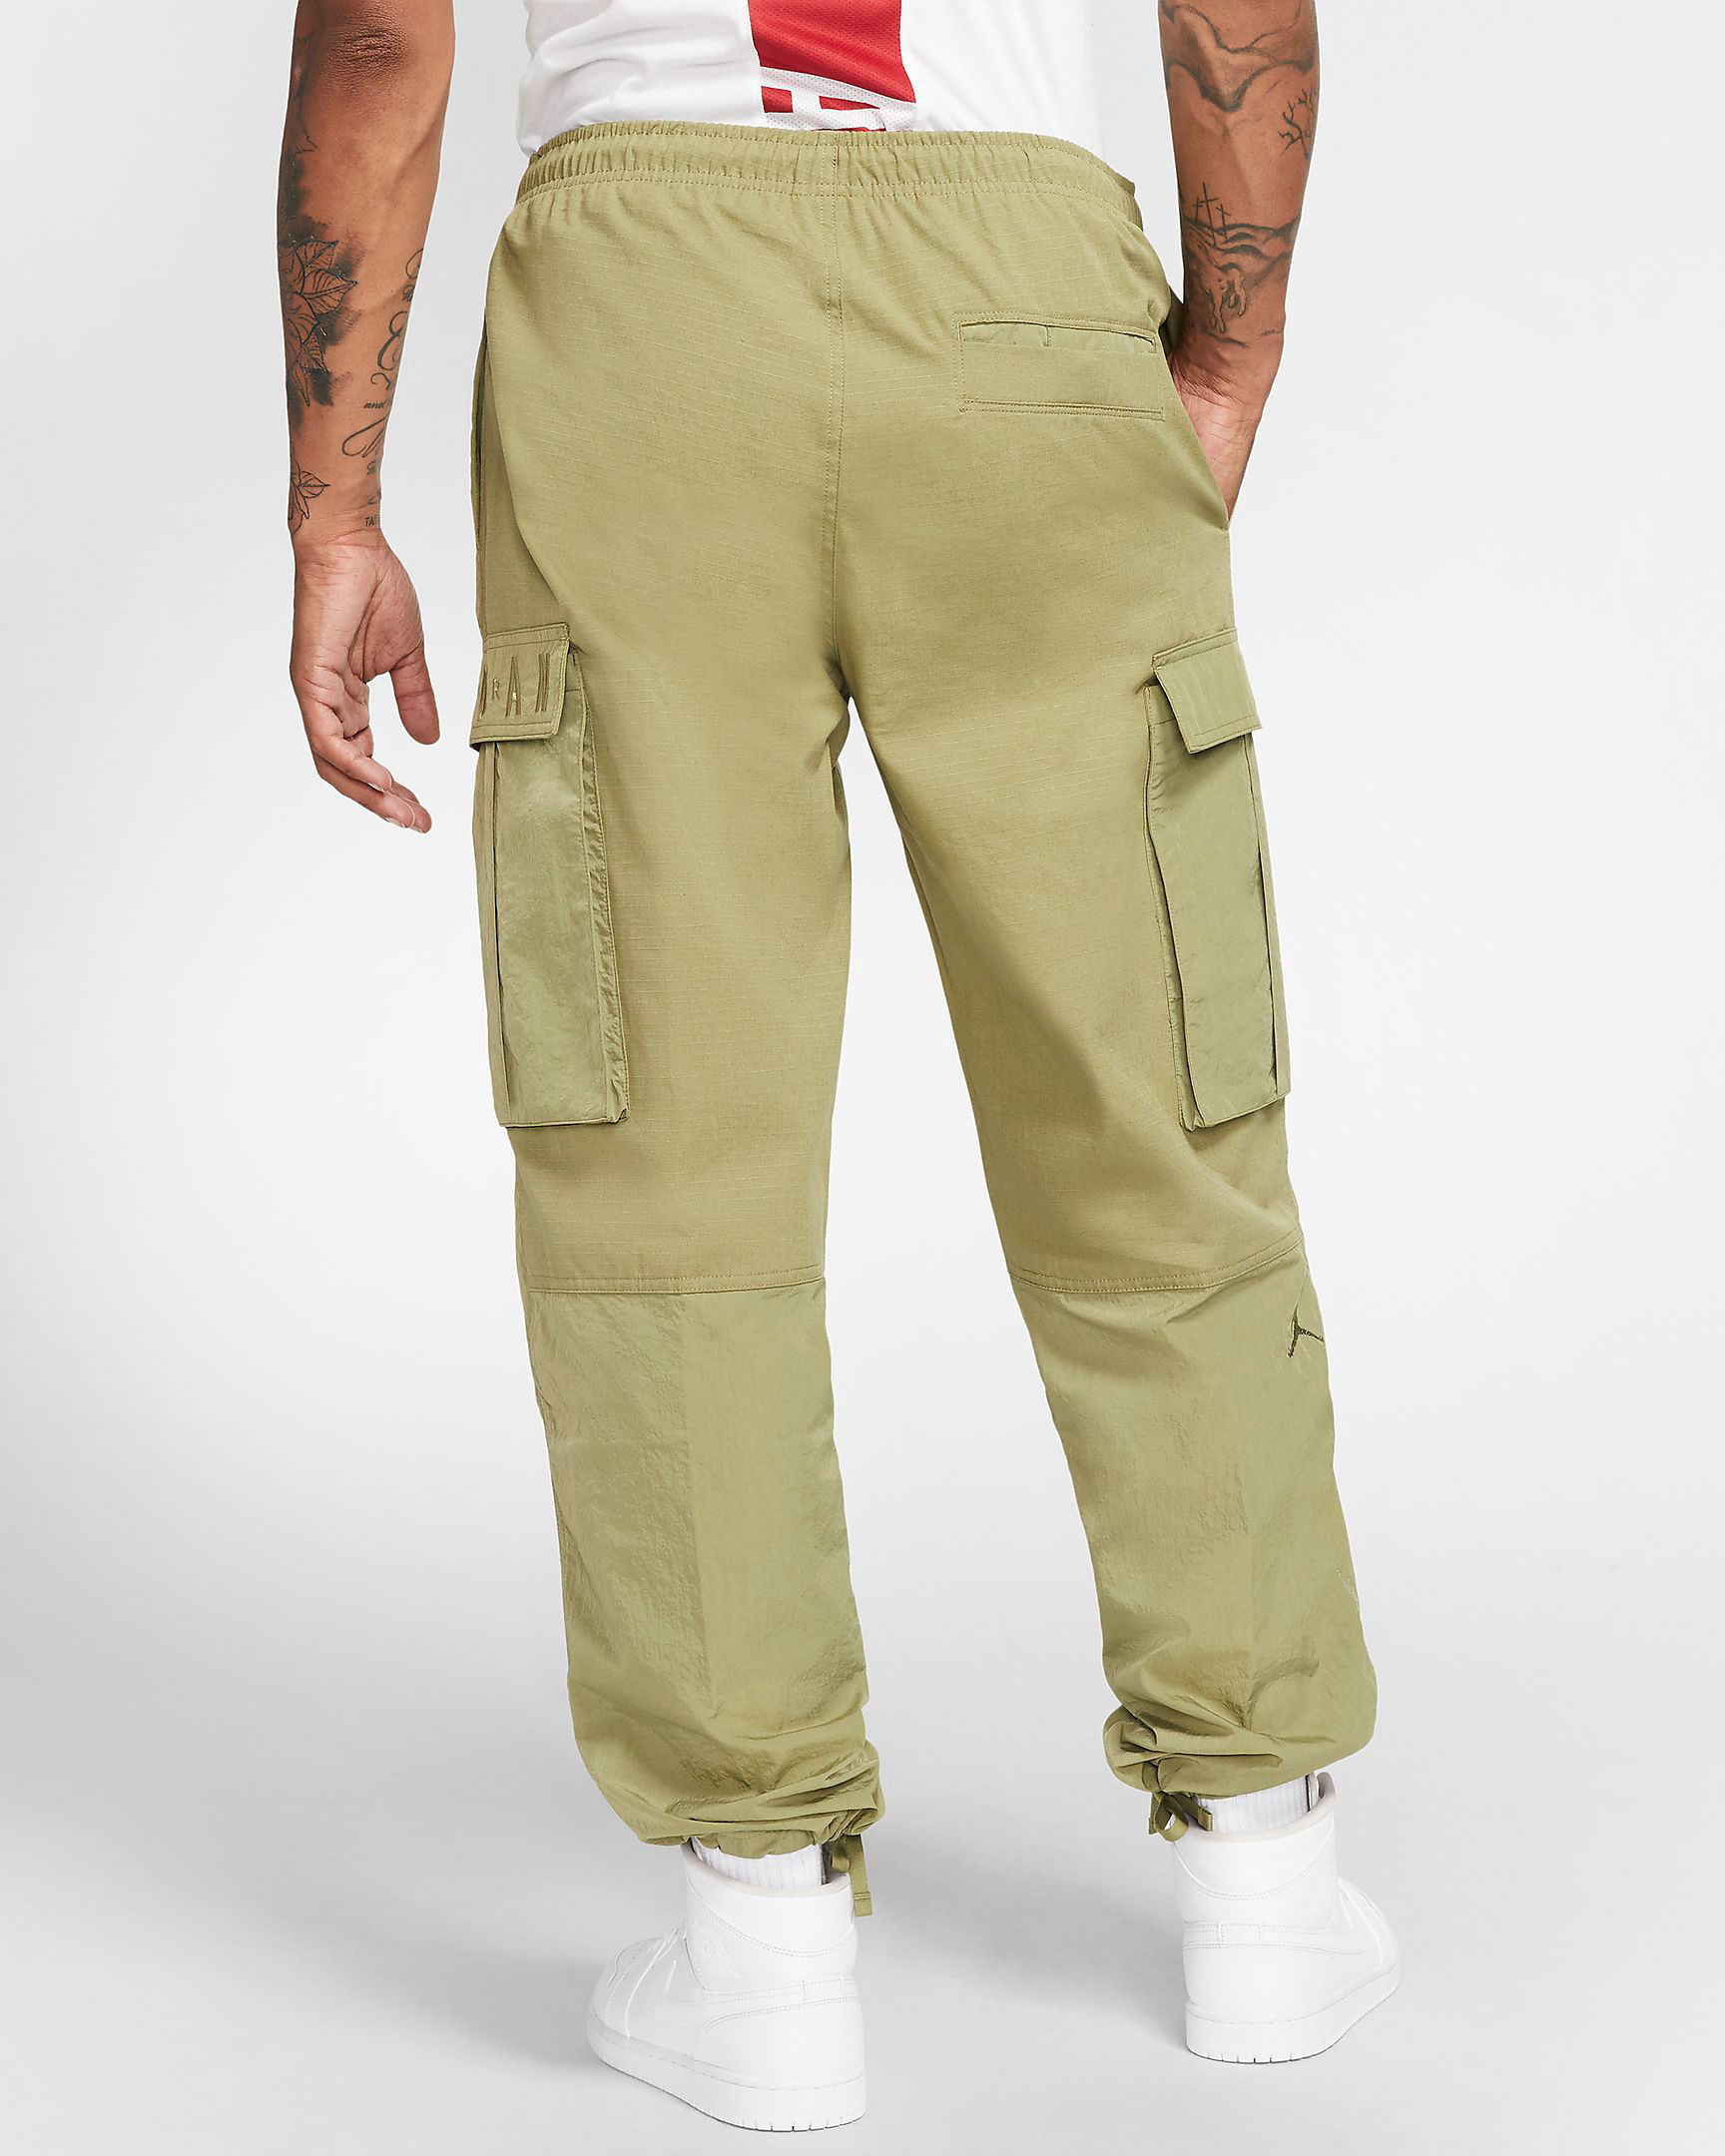 jordan 1 with cargo pants